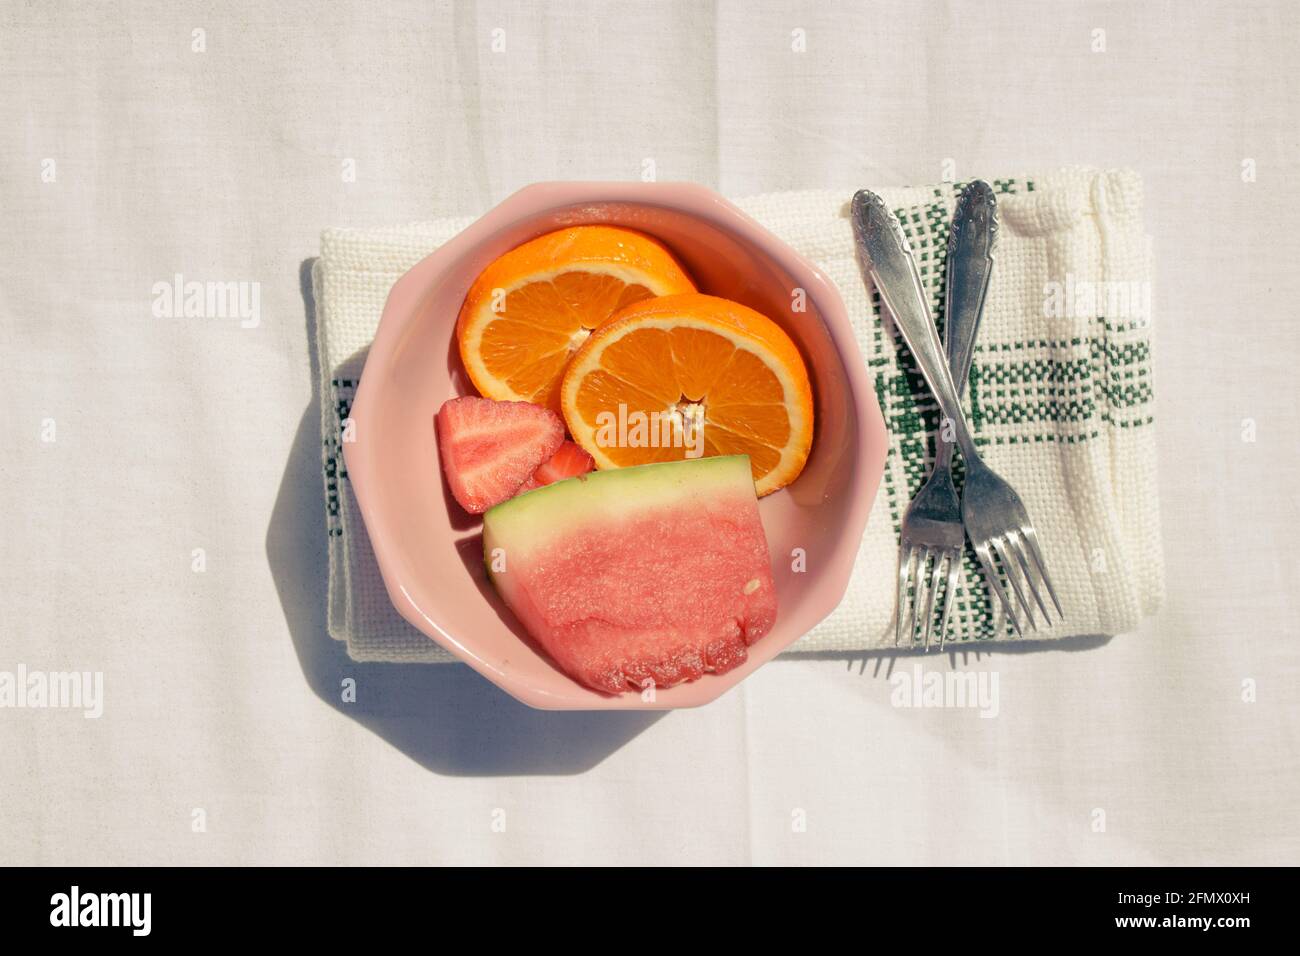 Immagine dettagliata in orizzontale di frutta assortita (arance, anguria e fragola) in una ciotola rosa insieme a due forchette su asciugamano in tessuto bianco Foto Stock